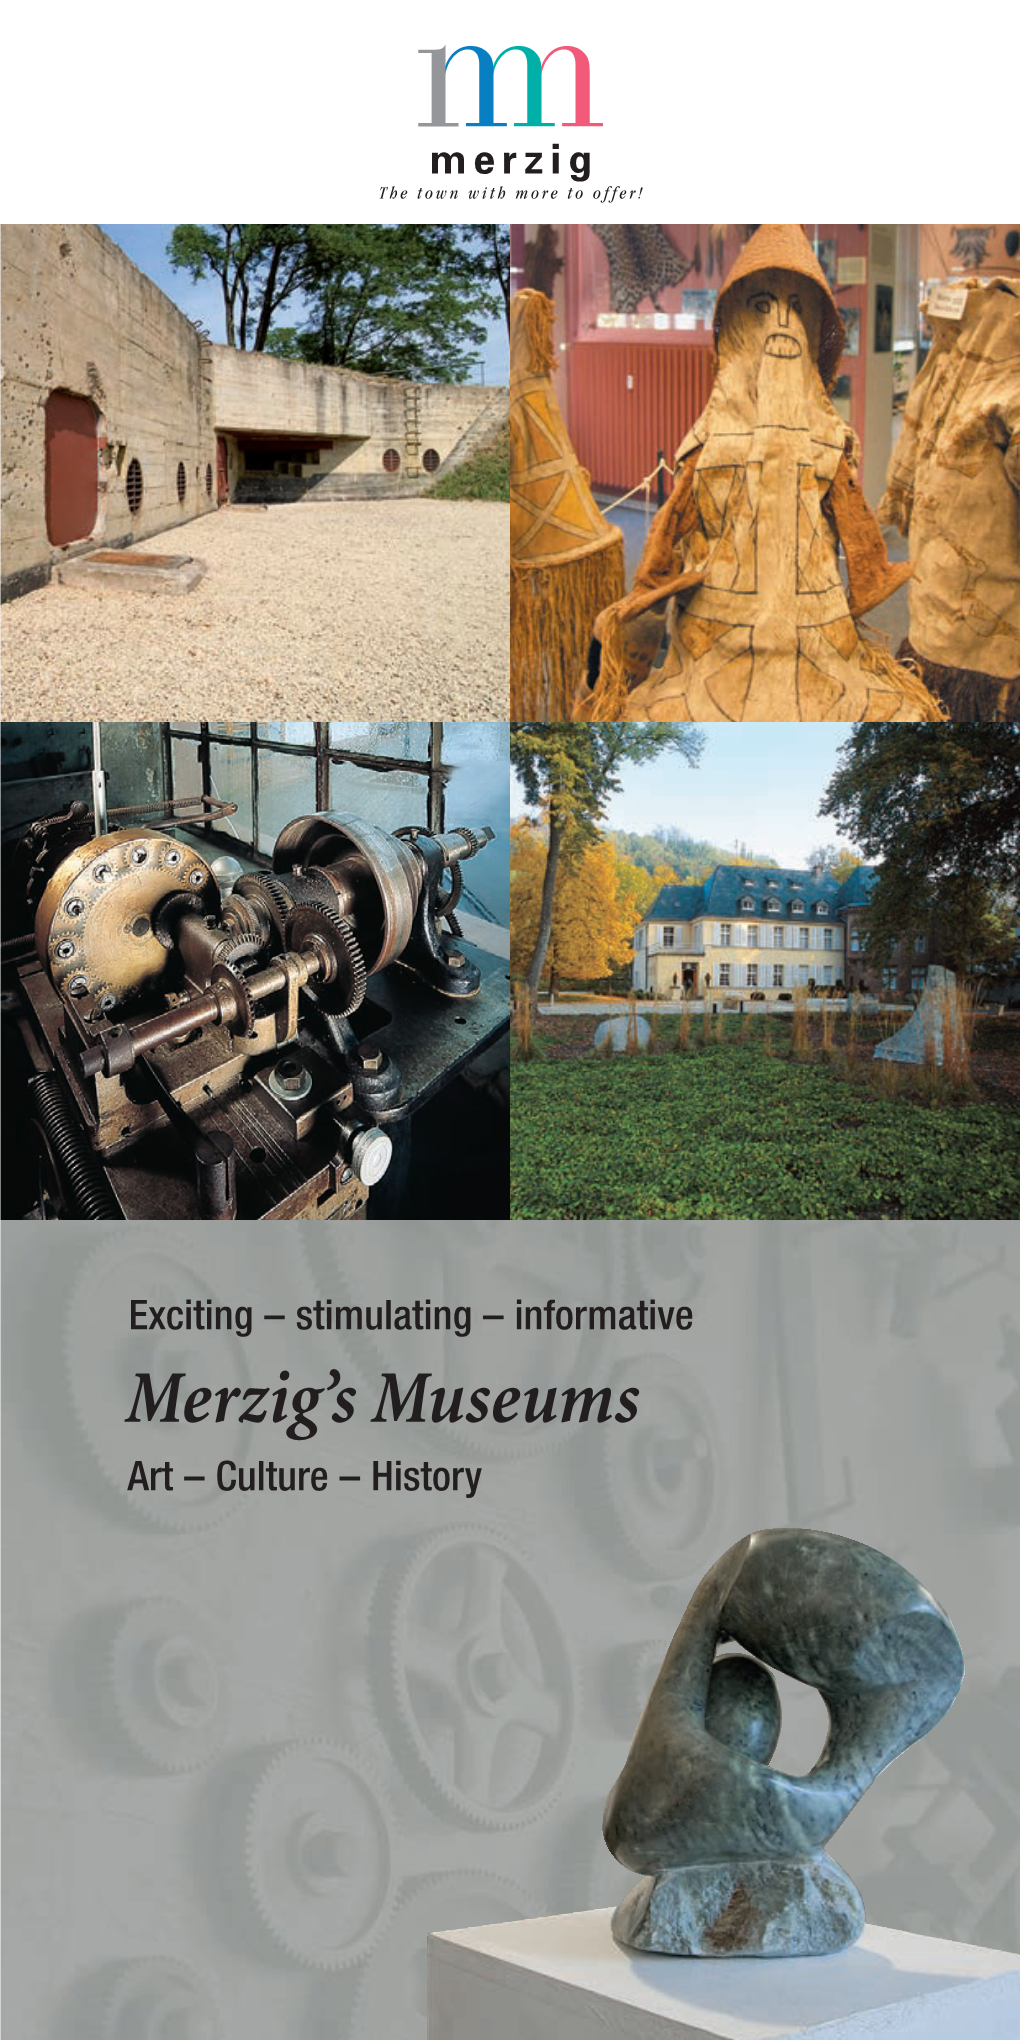 Merzig's Museums